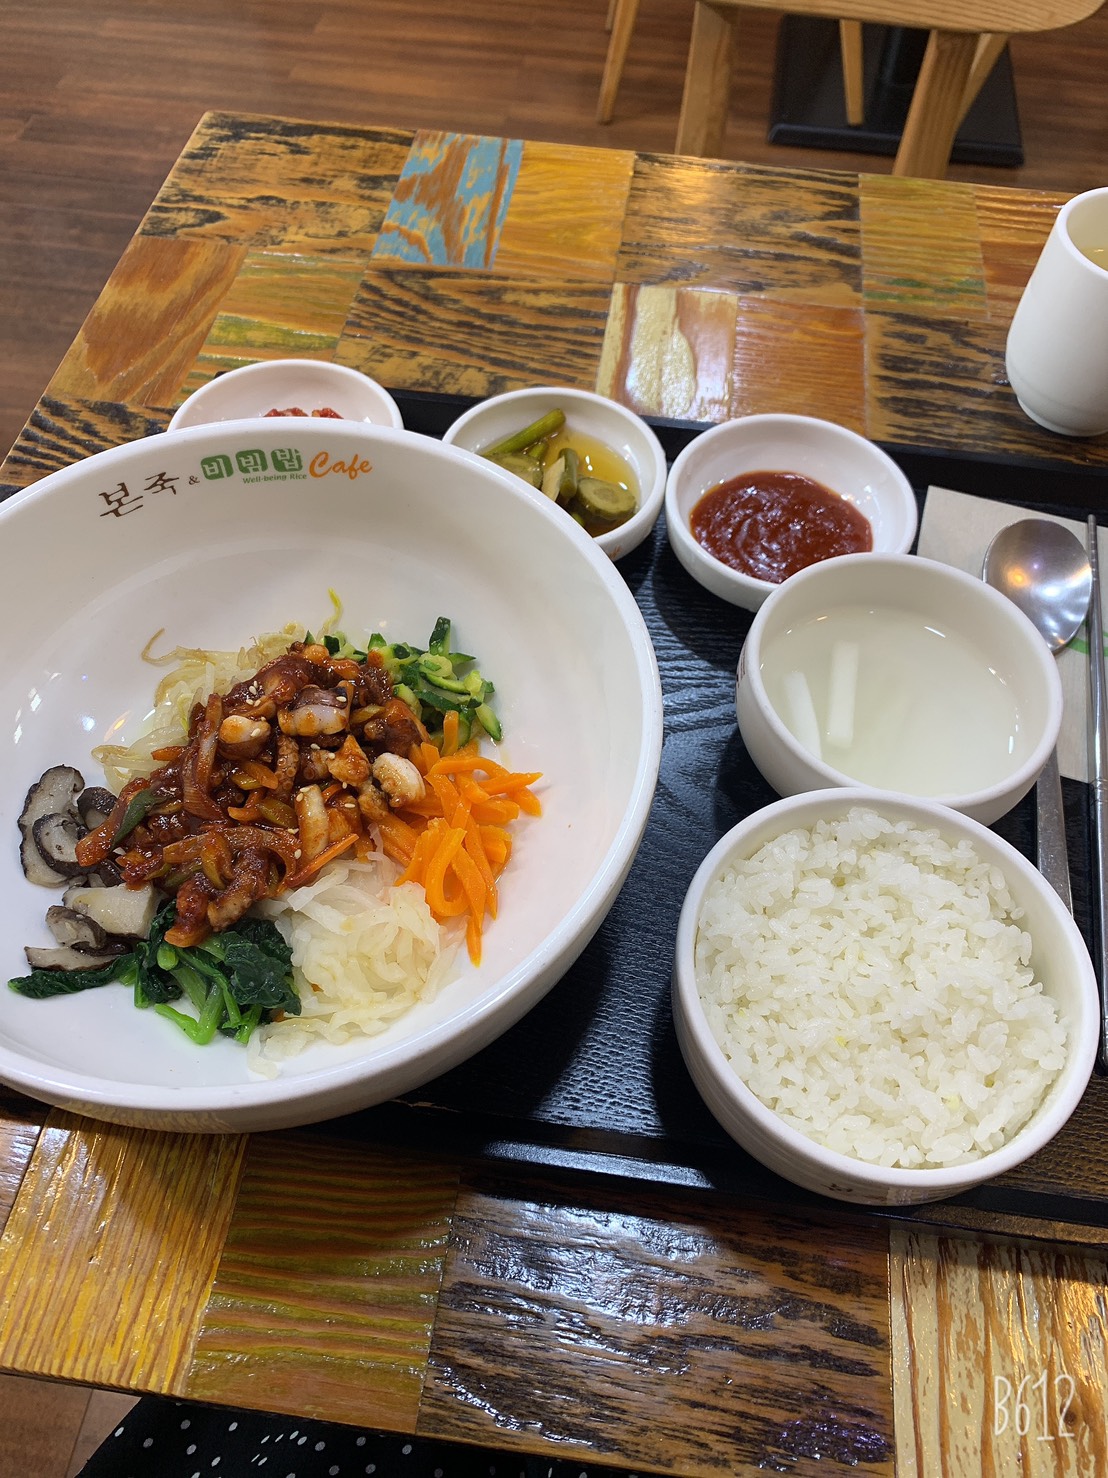 ダイエットにも良い?!韓国人も大好きな美味しい新大久保駅のお粥専門店をご紹介